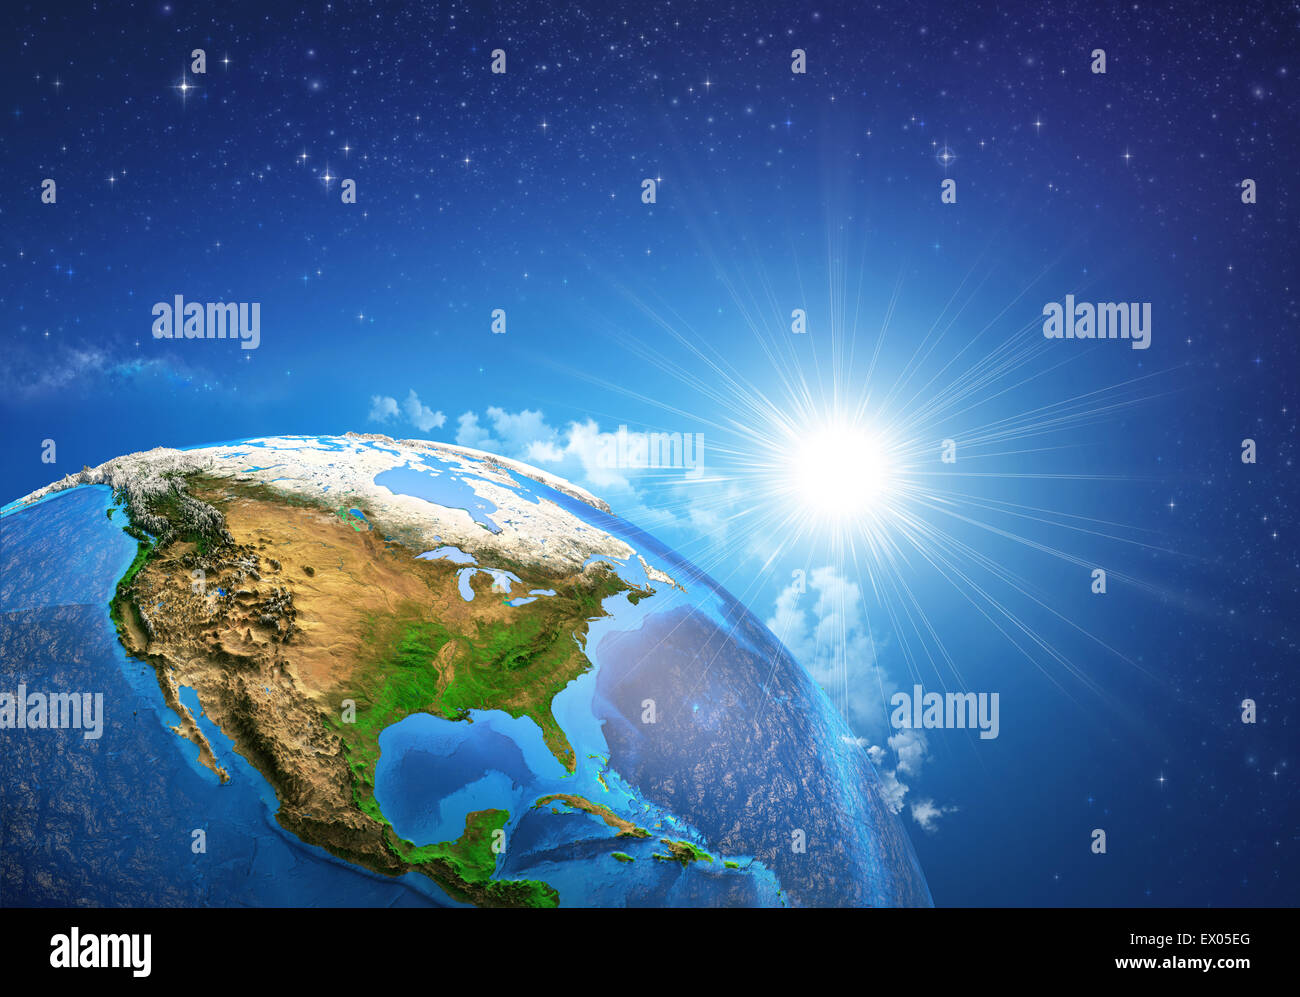 Aufgehende Sonne über der Erde und seiner Landschaftsformen, Blick auf die Vereinigten Staaten von Amerika. Elemente dieses Bildes, eingerichtet von der NASA Stockfoto